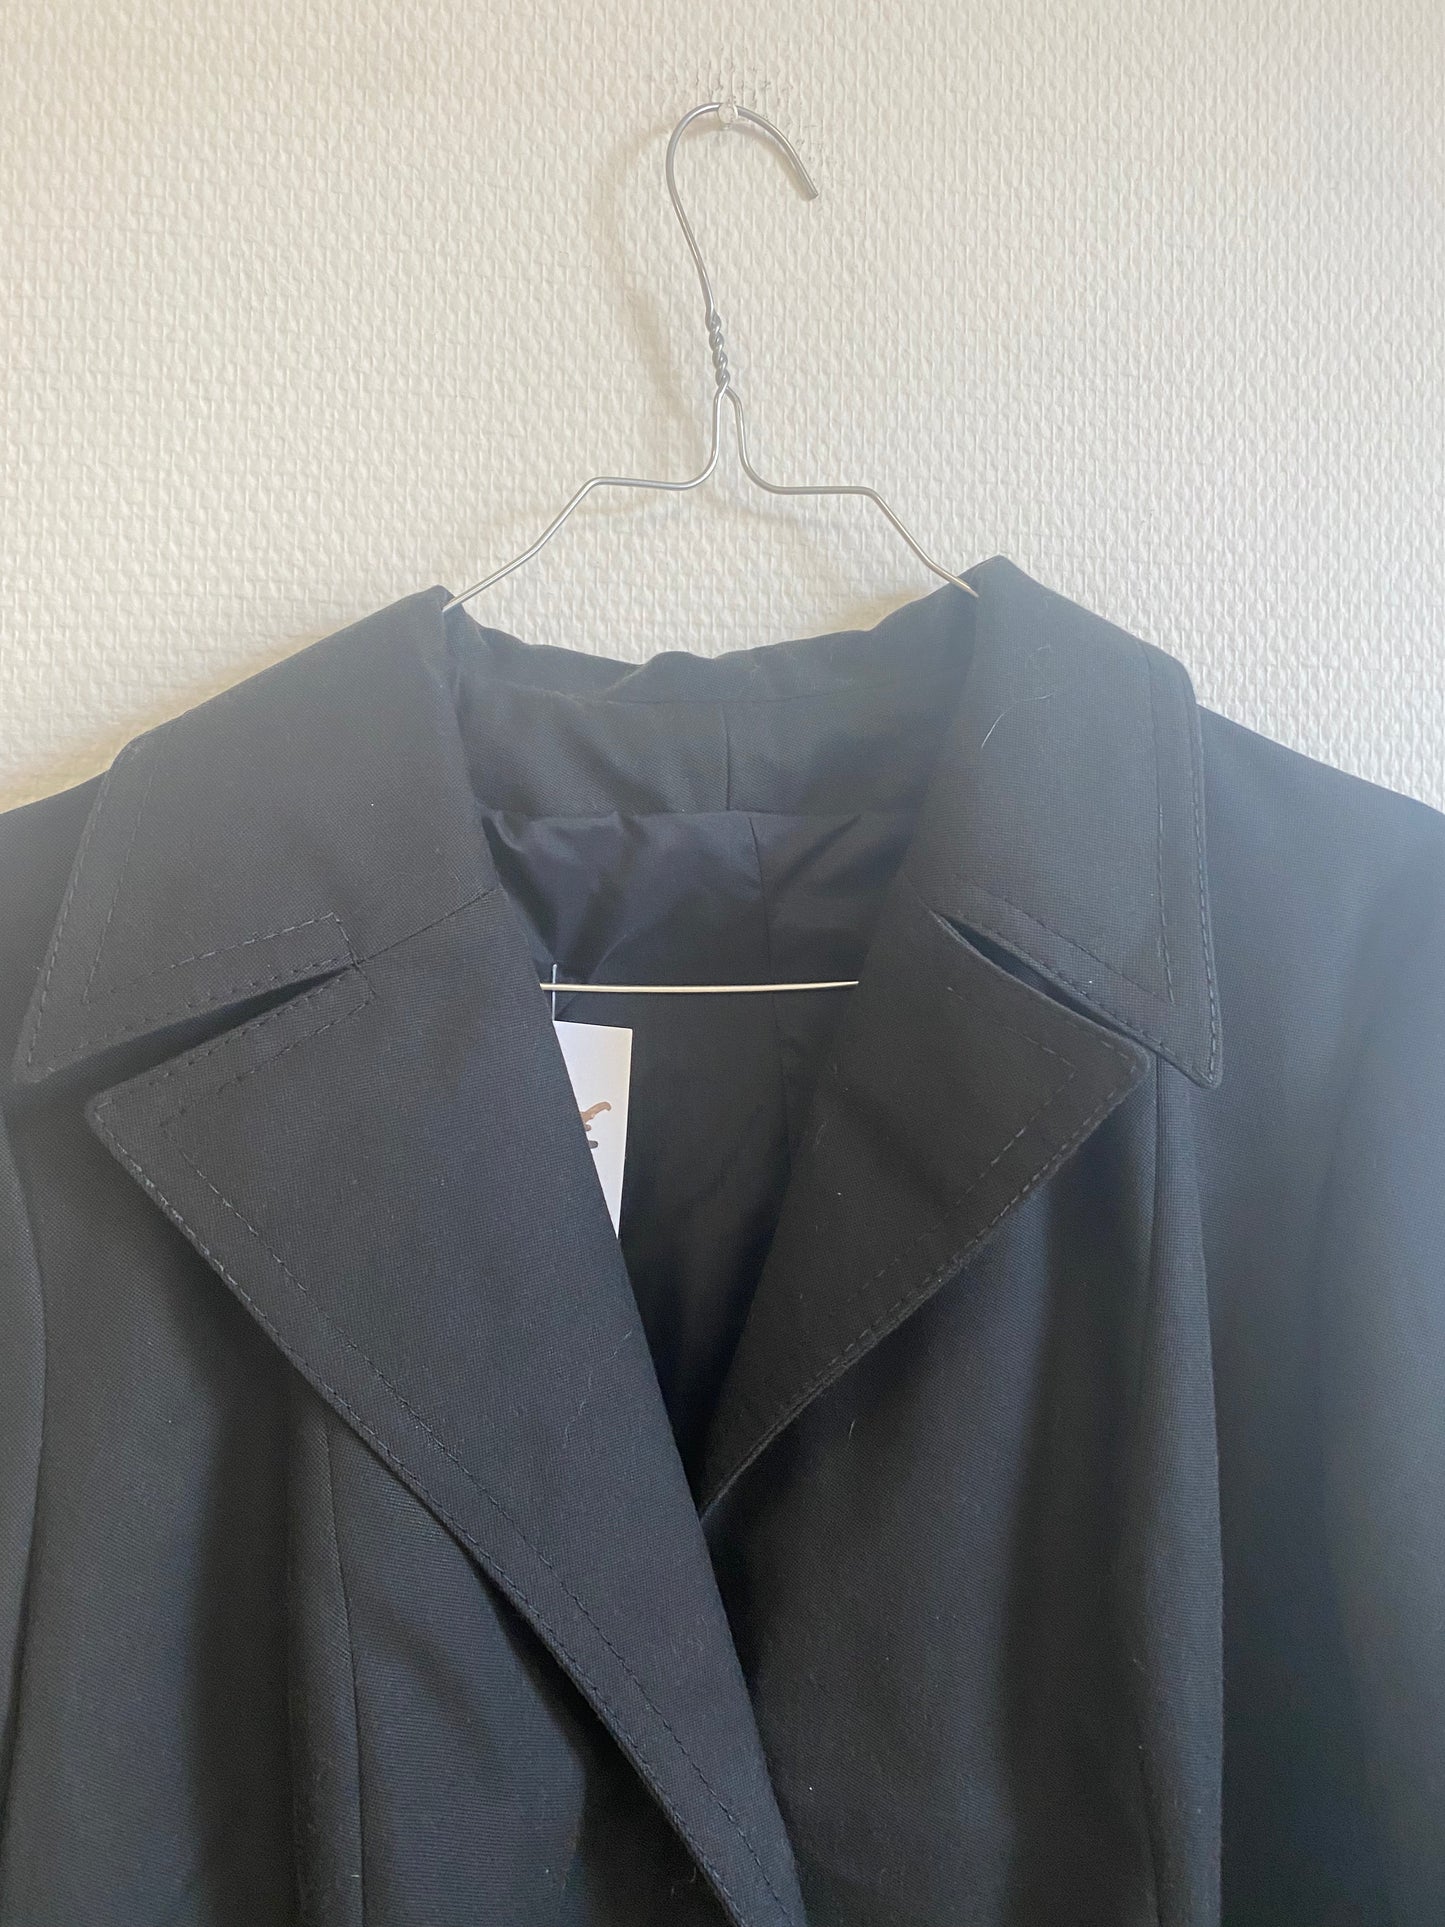 Trench-coat noir 70s